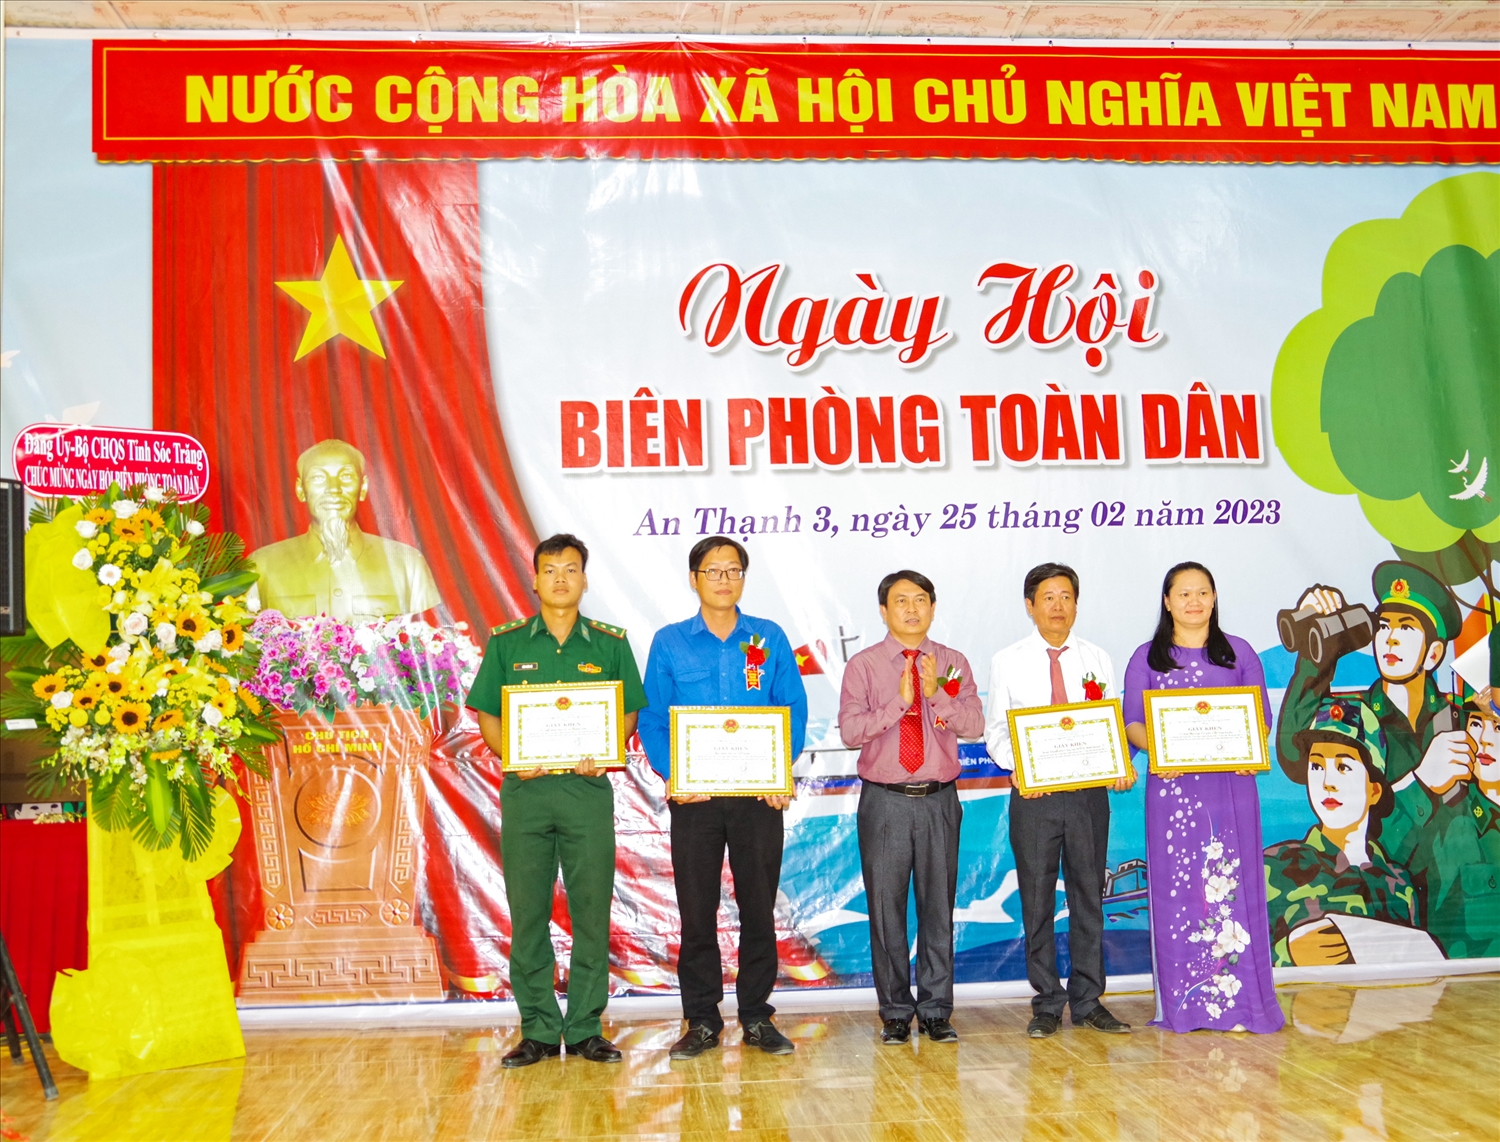 Ông Lê Trọng Nguyên – Bí thư Huyện ủy Cù Lao Dung (Sóc Trăng) trao Giấy khen cho các tập thể tiêu biểu